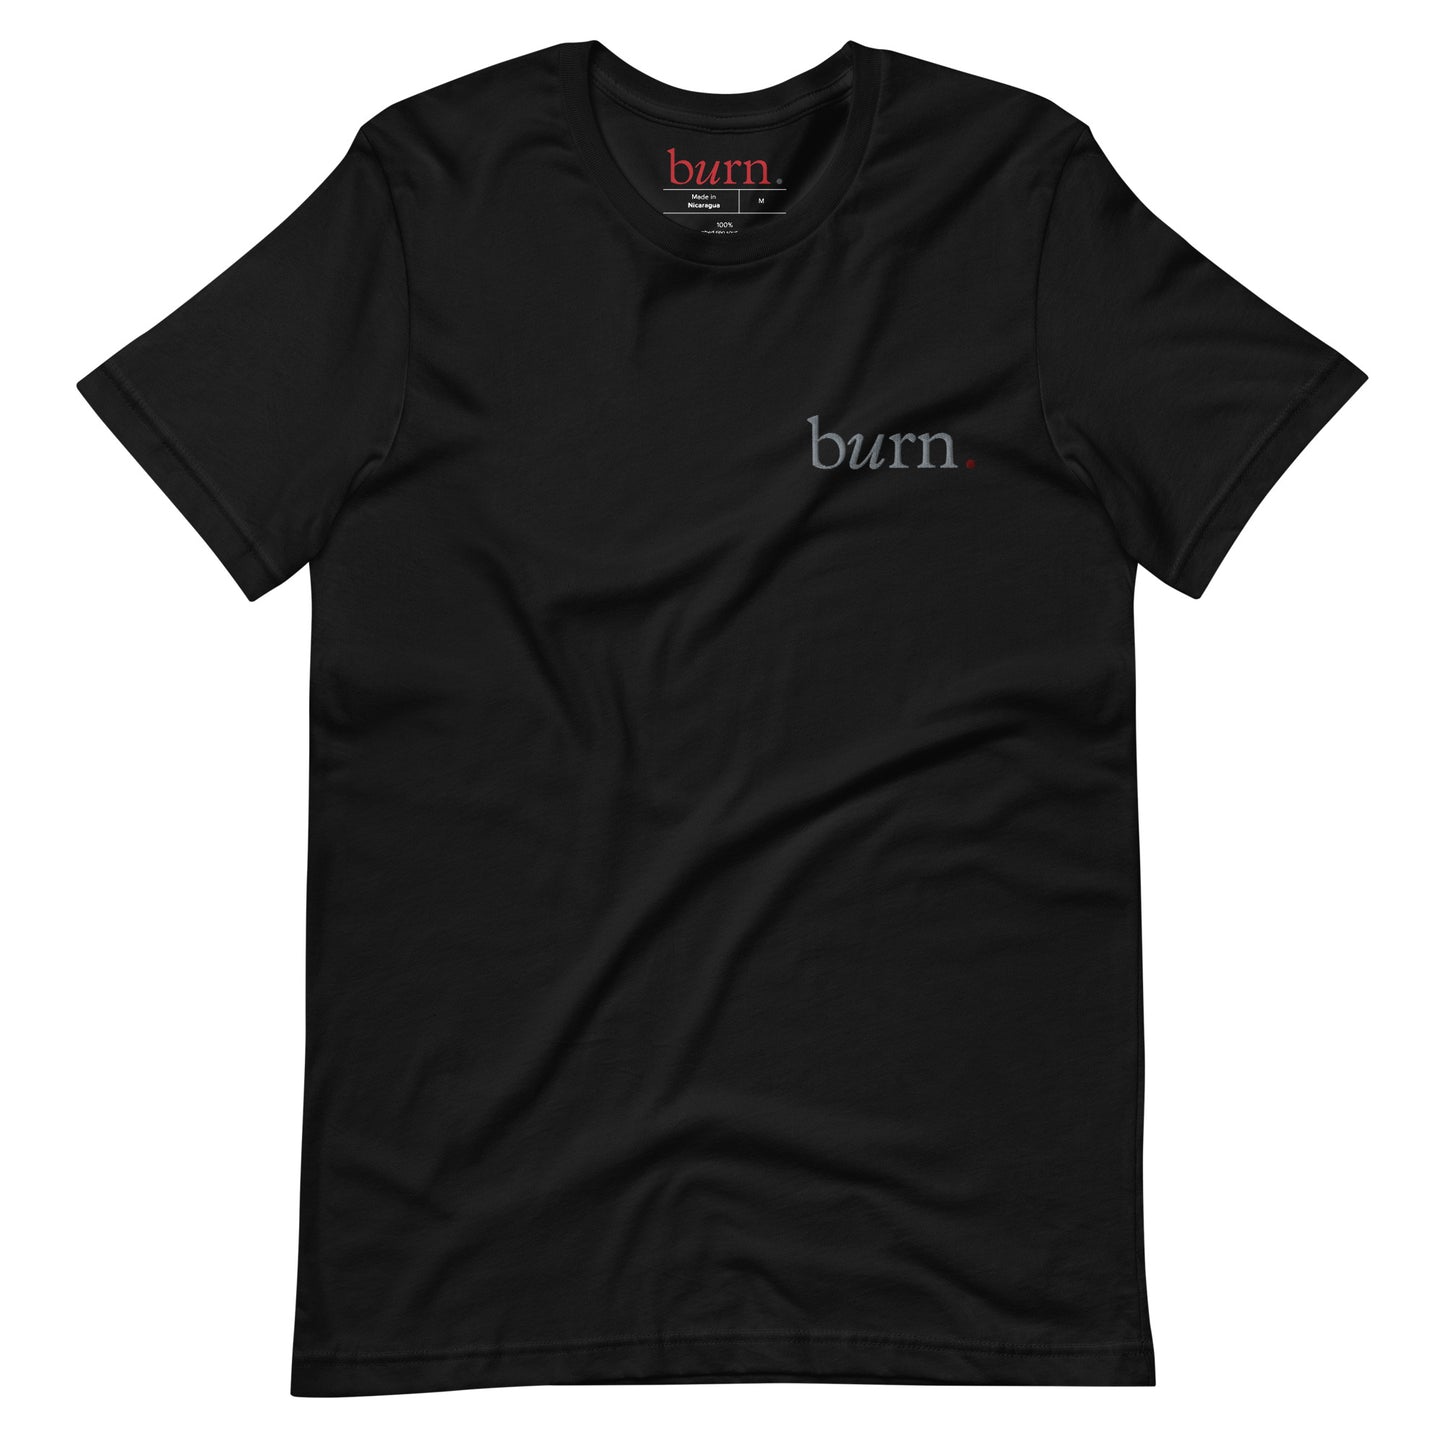 Burn t-shirt